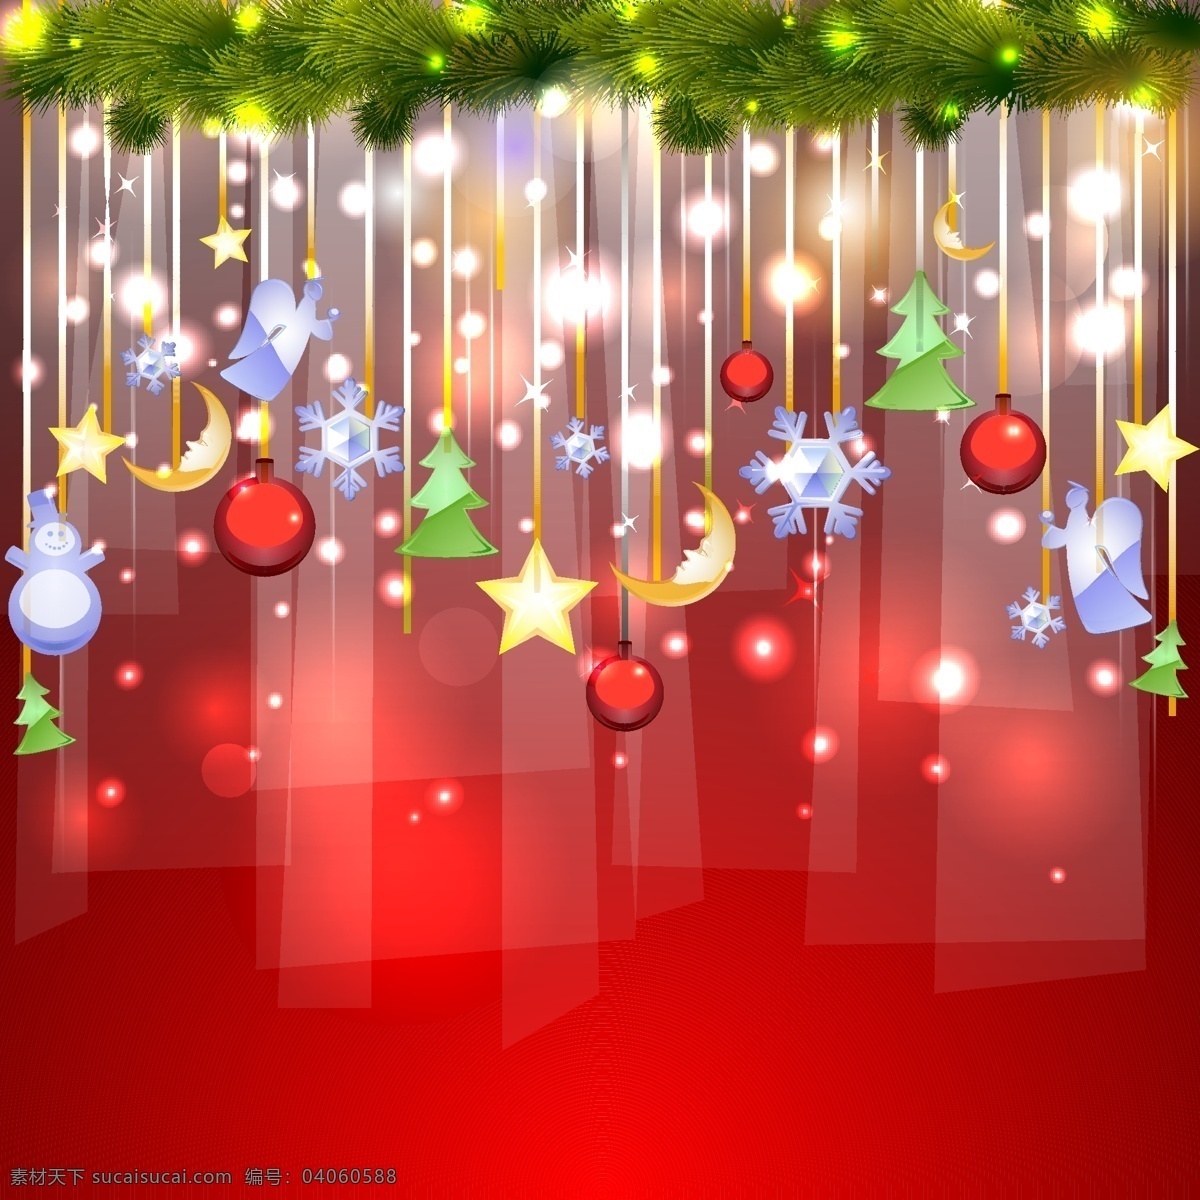 圣诞节 圣诞吊饰 星星 月亮 雪花 文化艺术 节日庆祝